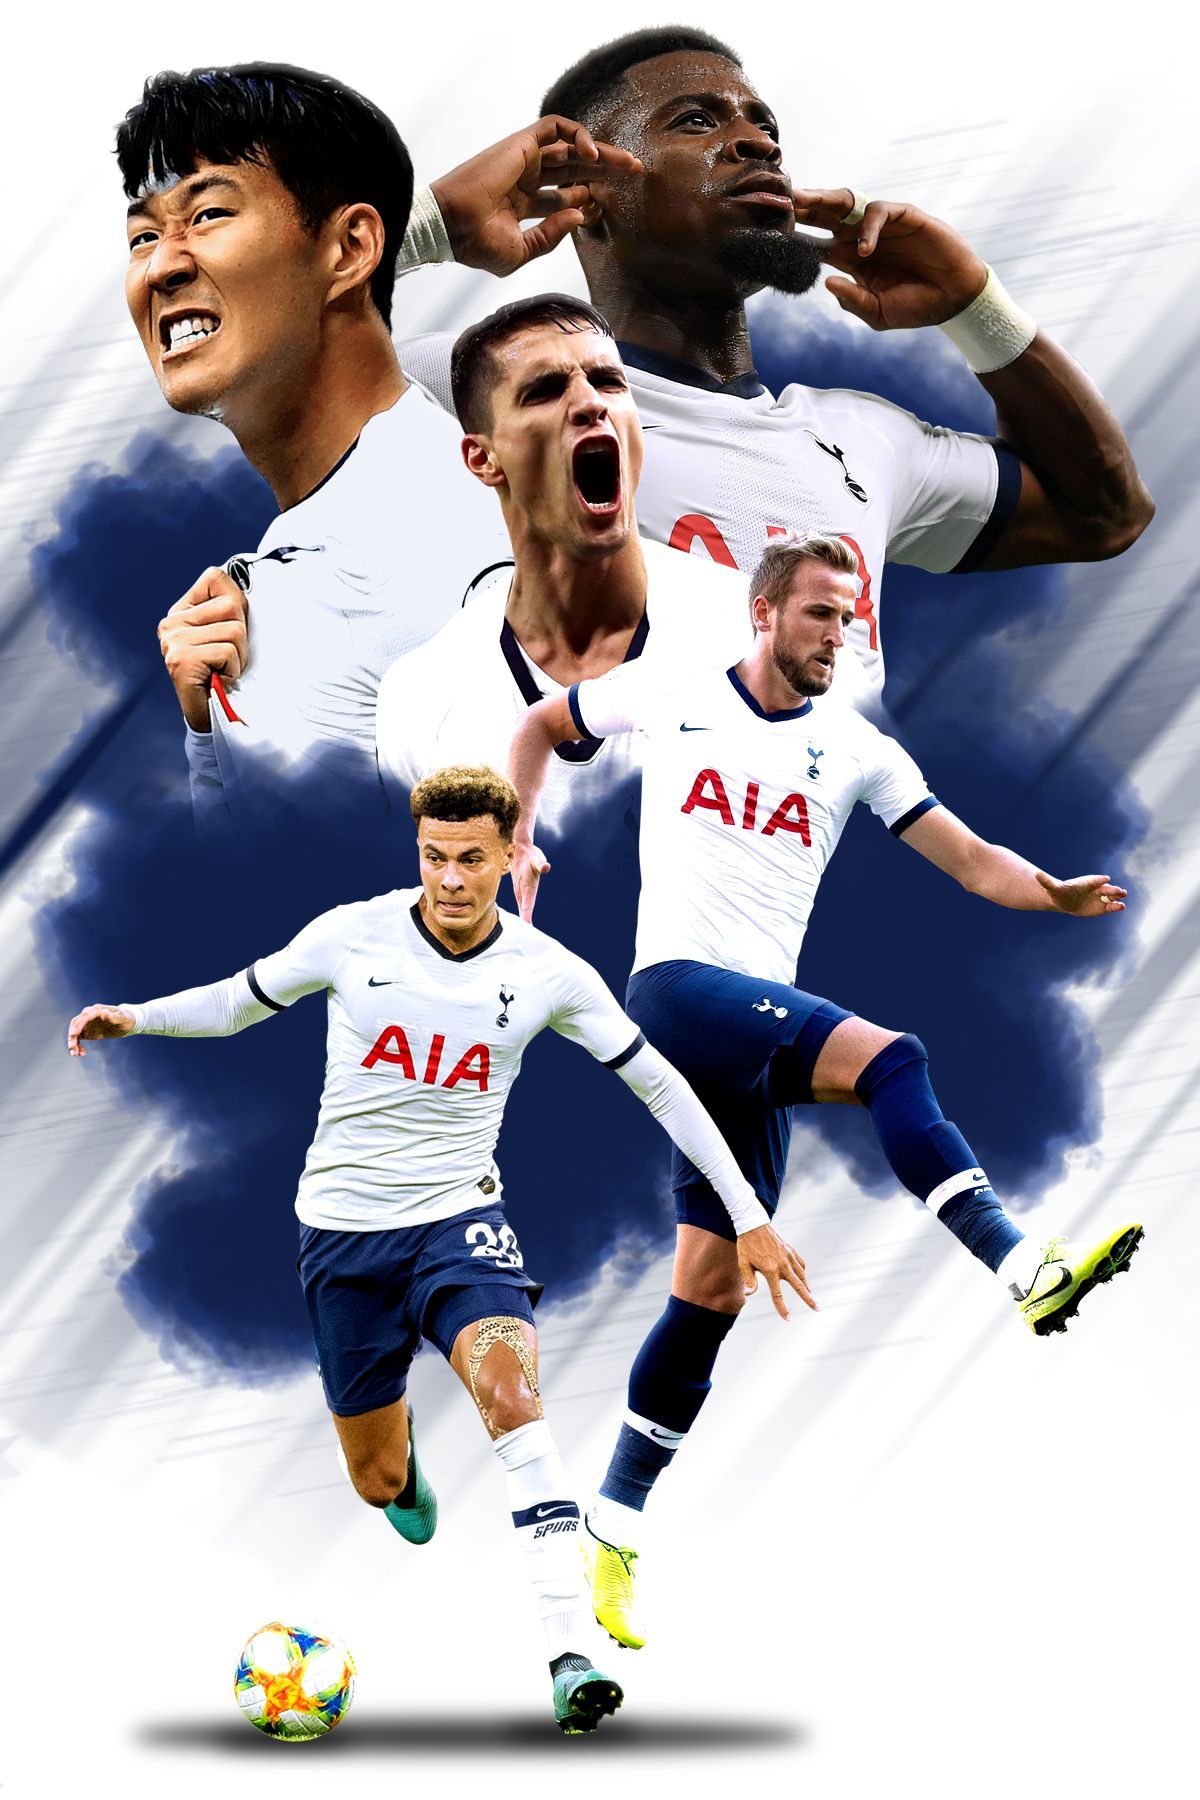 Tottenham Hotspur Poster. Tottenham hotspur, Tottenham hotspur wallpaper, Tottenham hotspur players